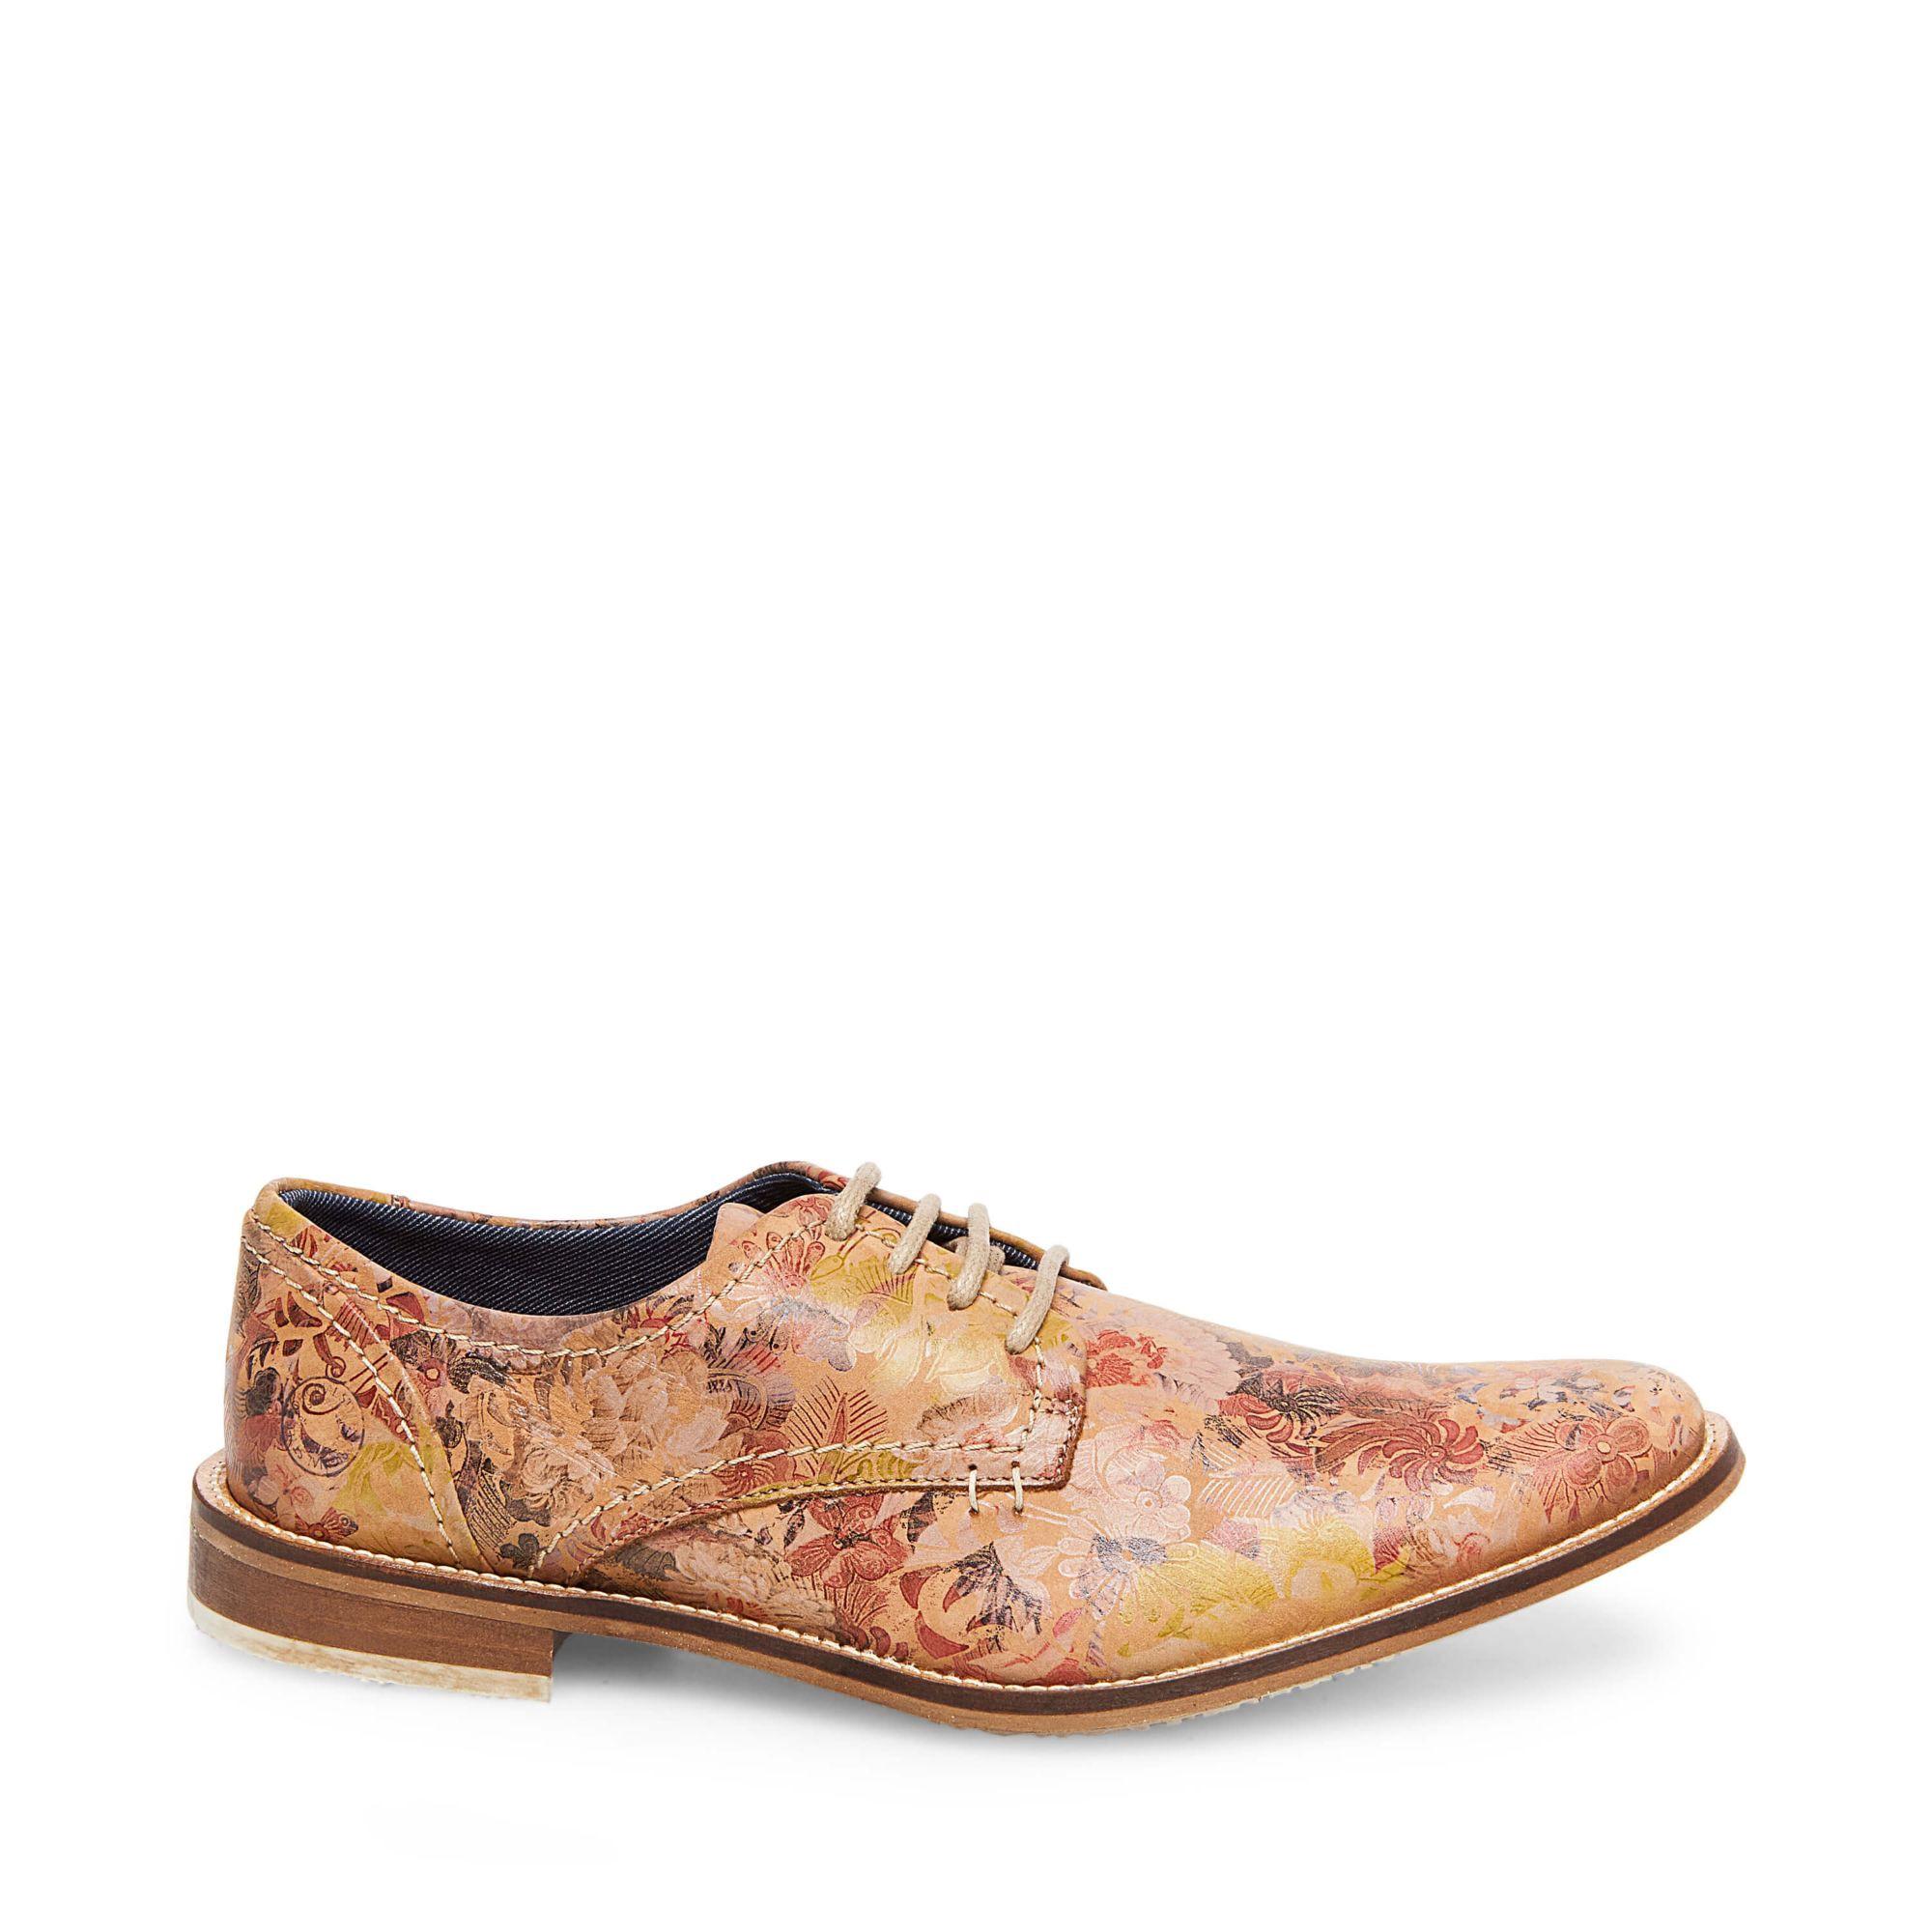 steve madden floral shoes